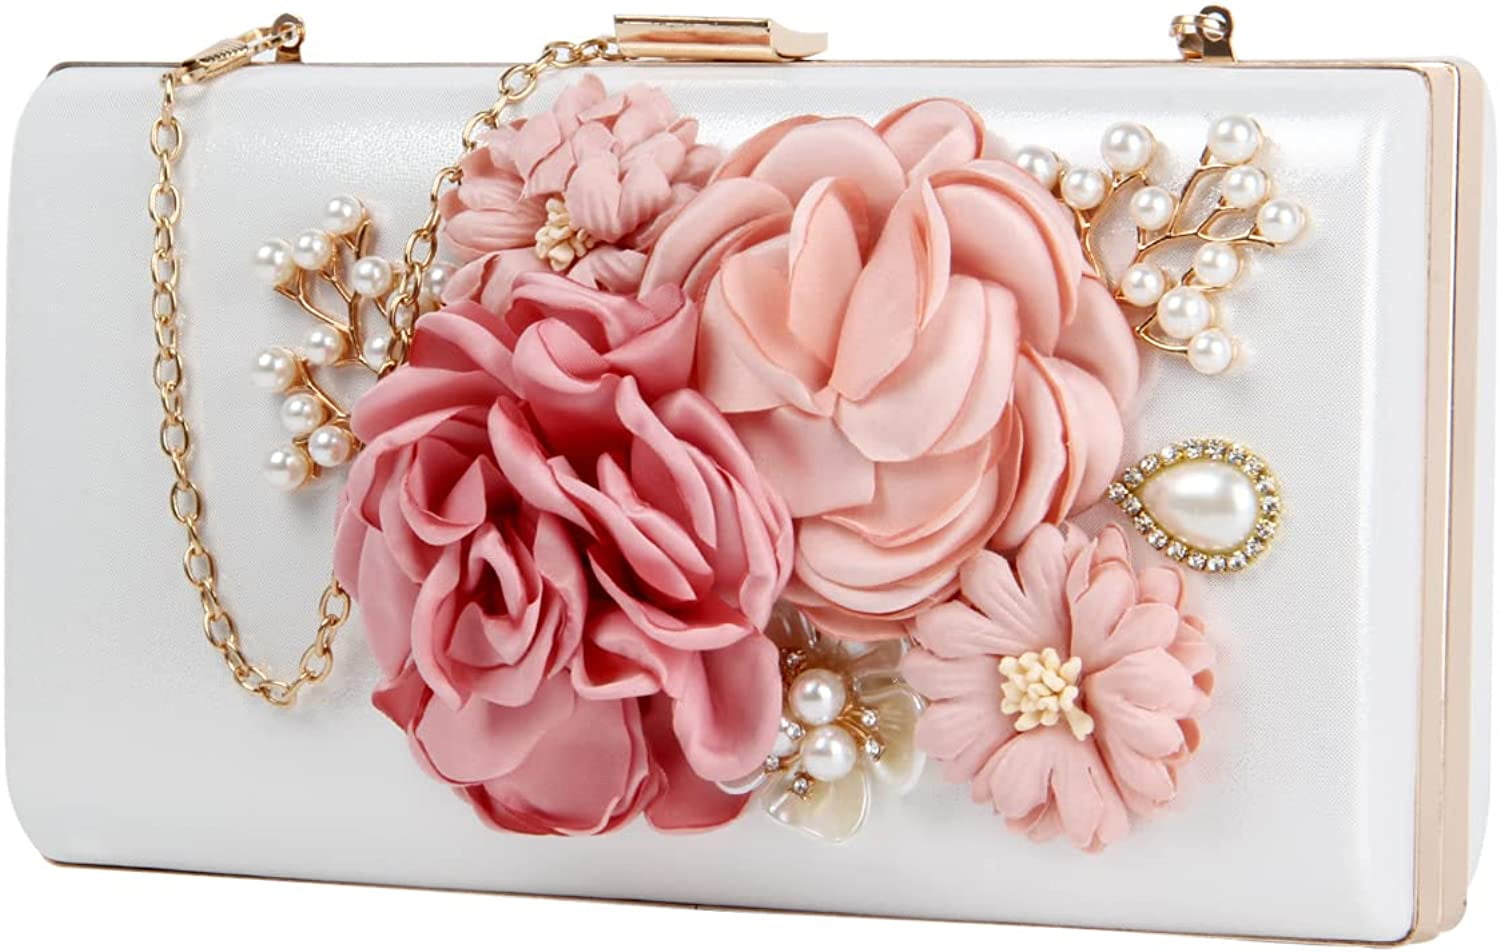 Ynport Women Acrylic Box Purse Elegant Flower Rhinestone Evening Clutch Floral Top Handle Tote Handbag Wedding Shoulder Bag